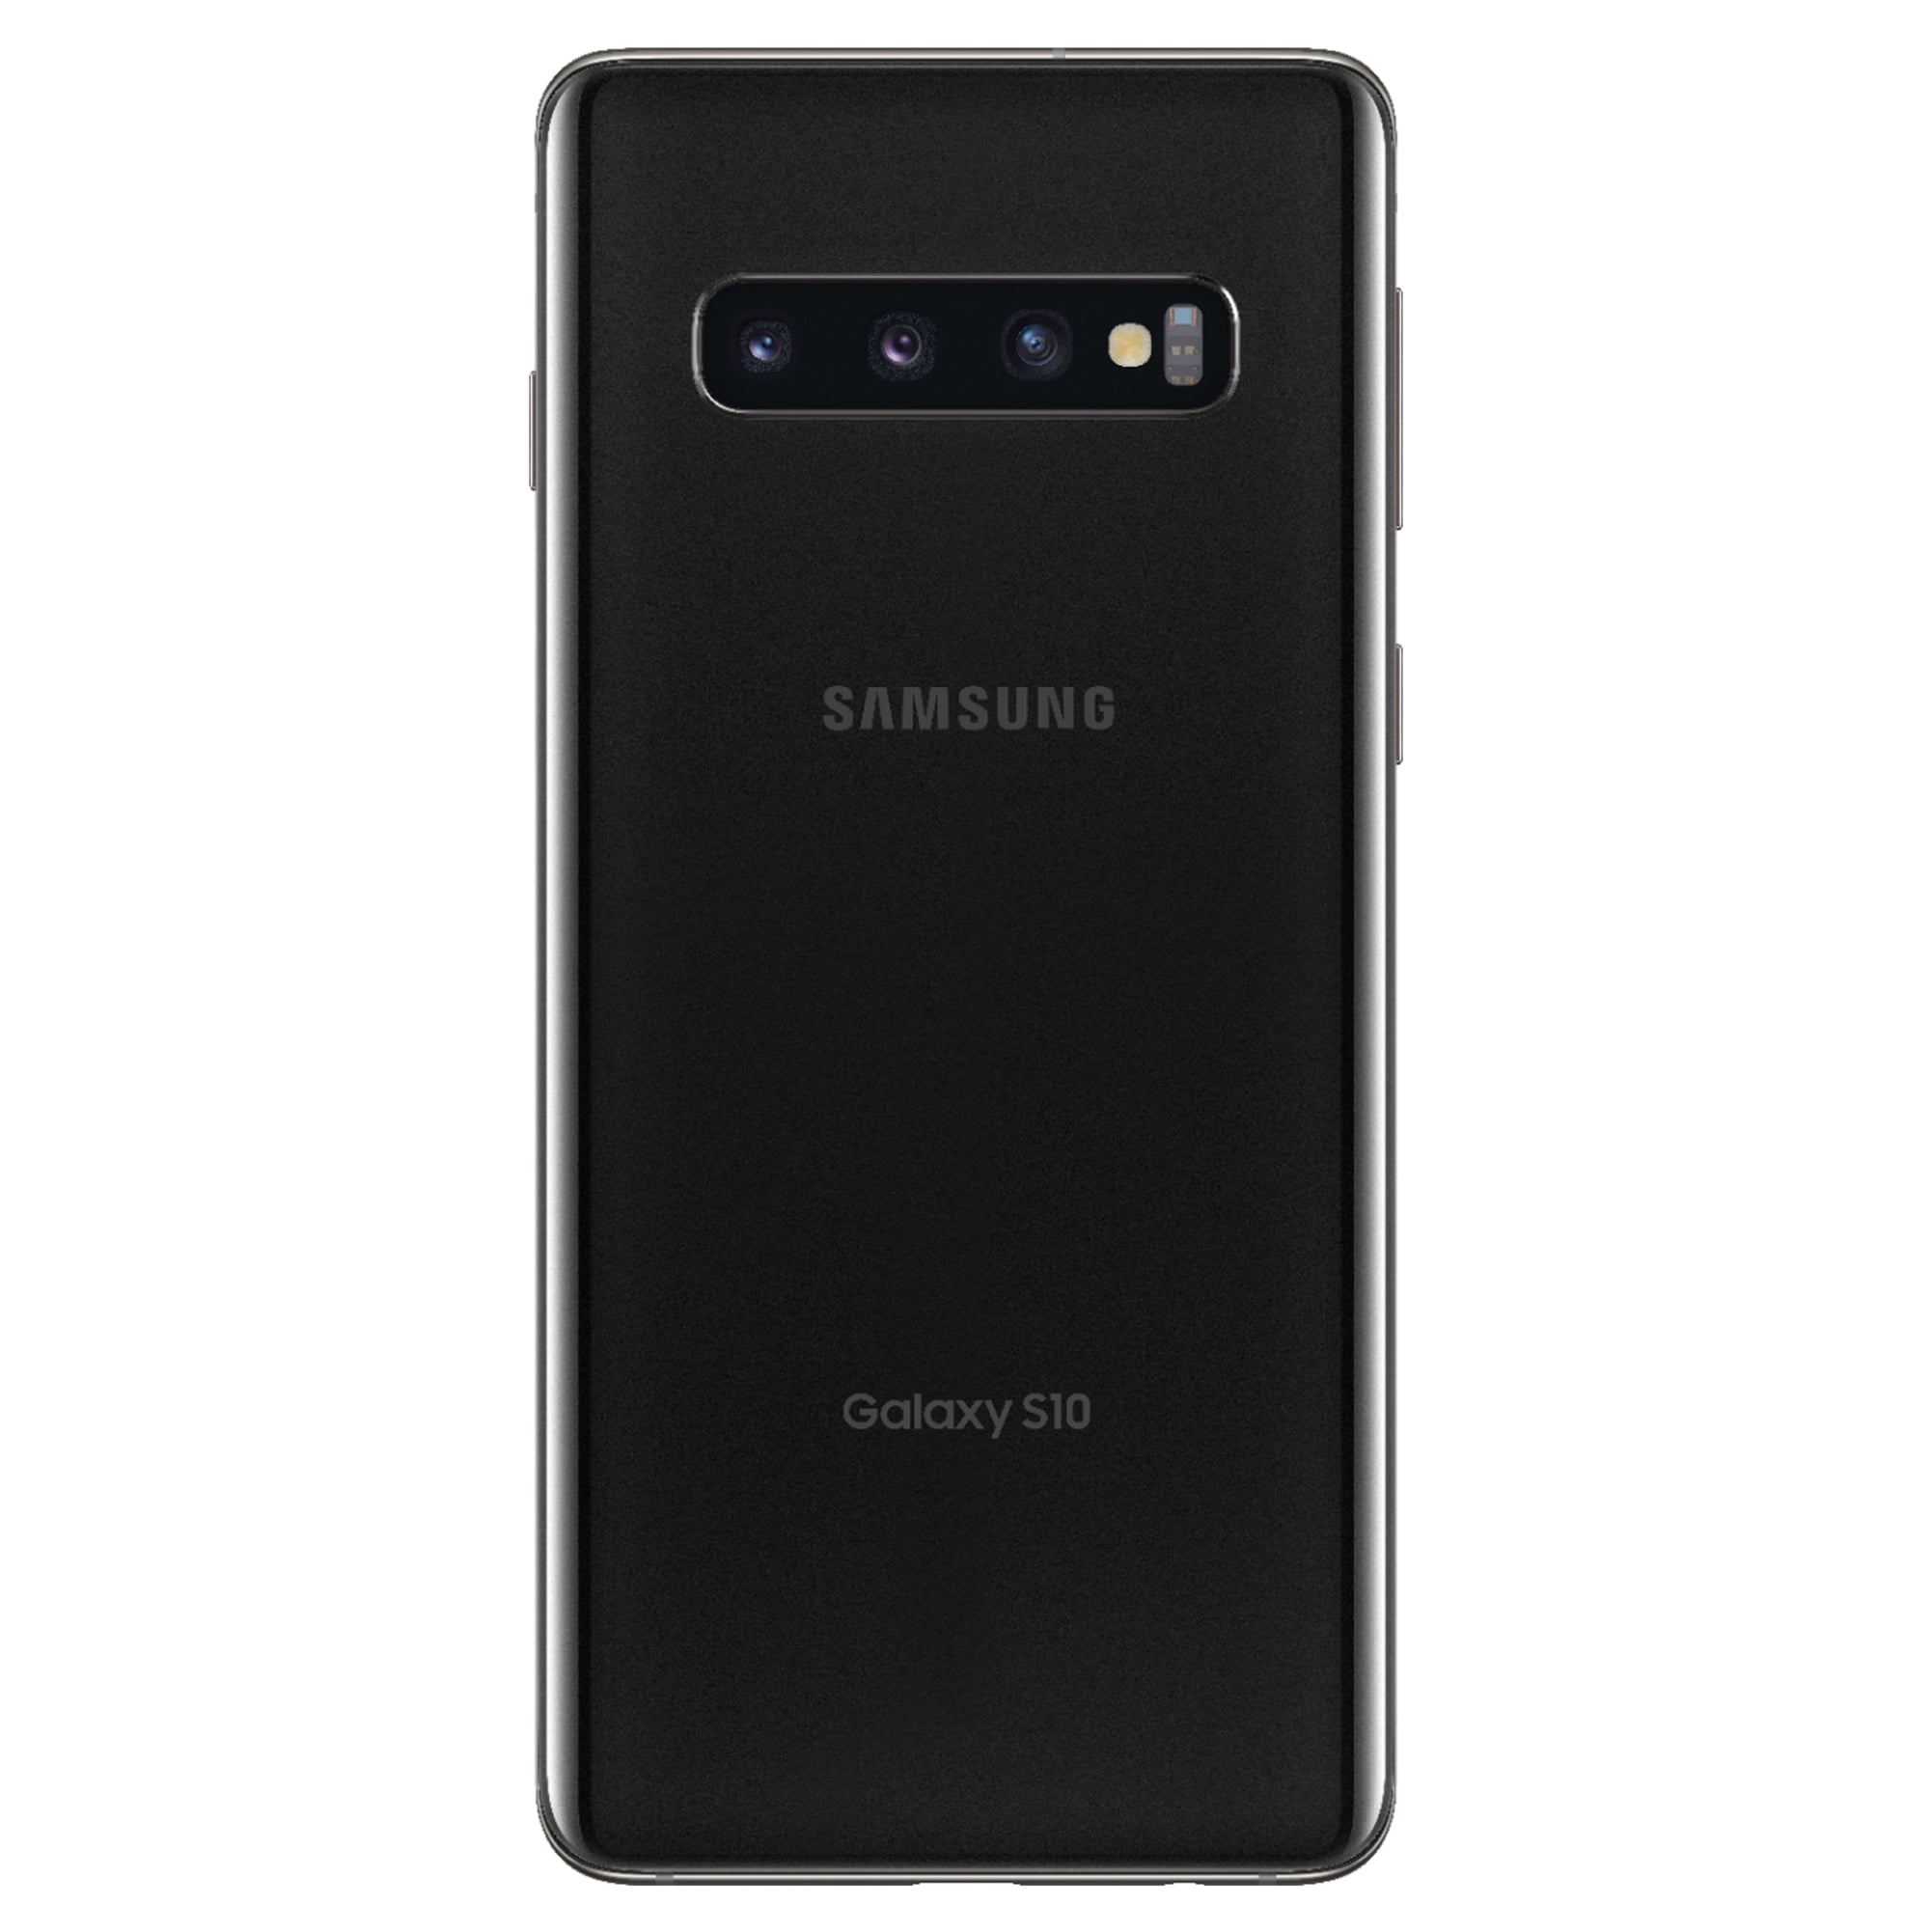 Galaxy S10 Prism black 128 GB SIMフリー